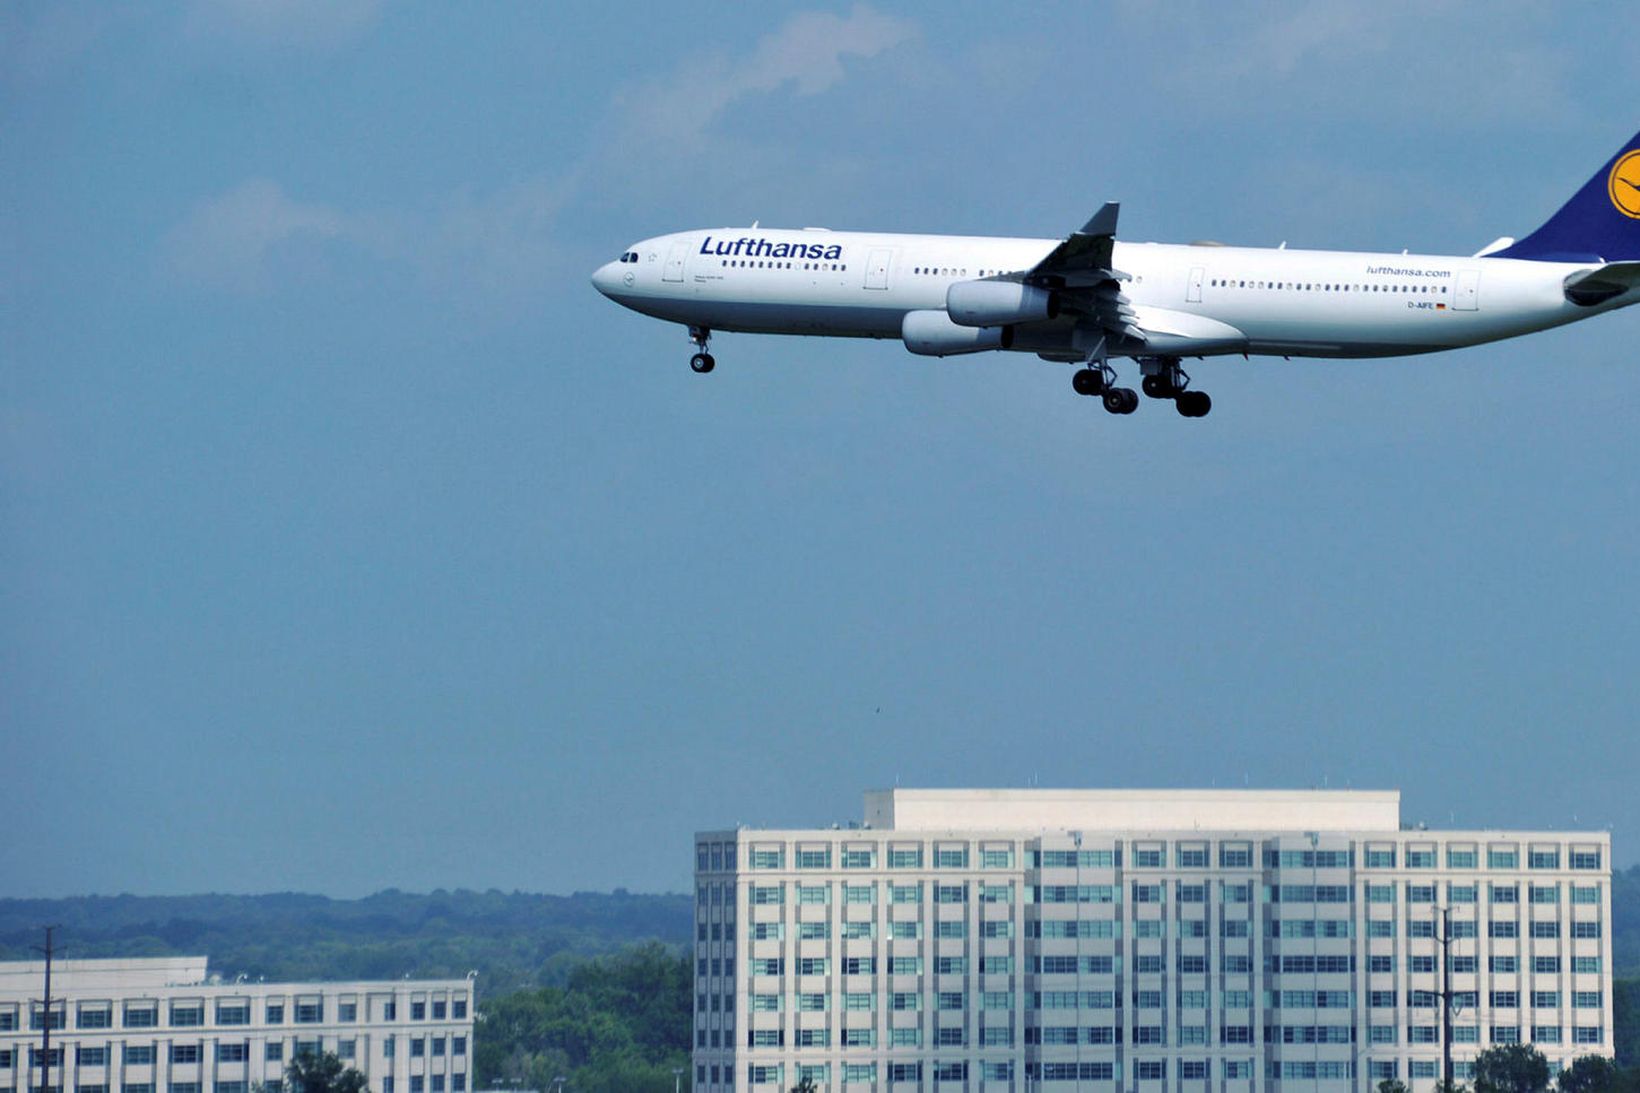 Lufthansa hefur dregið sætaframboð saman um 80-90%.